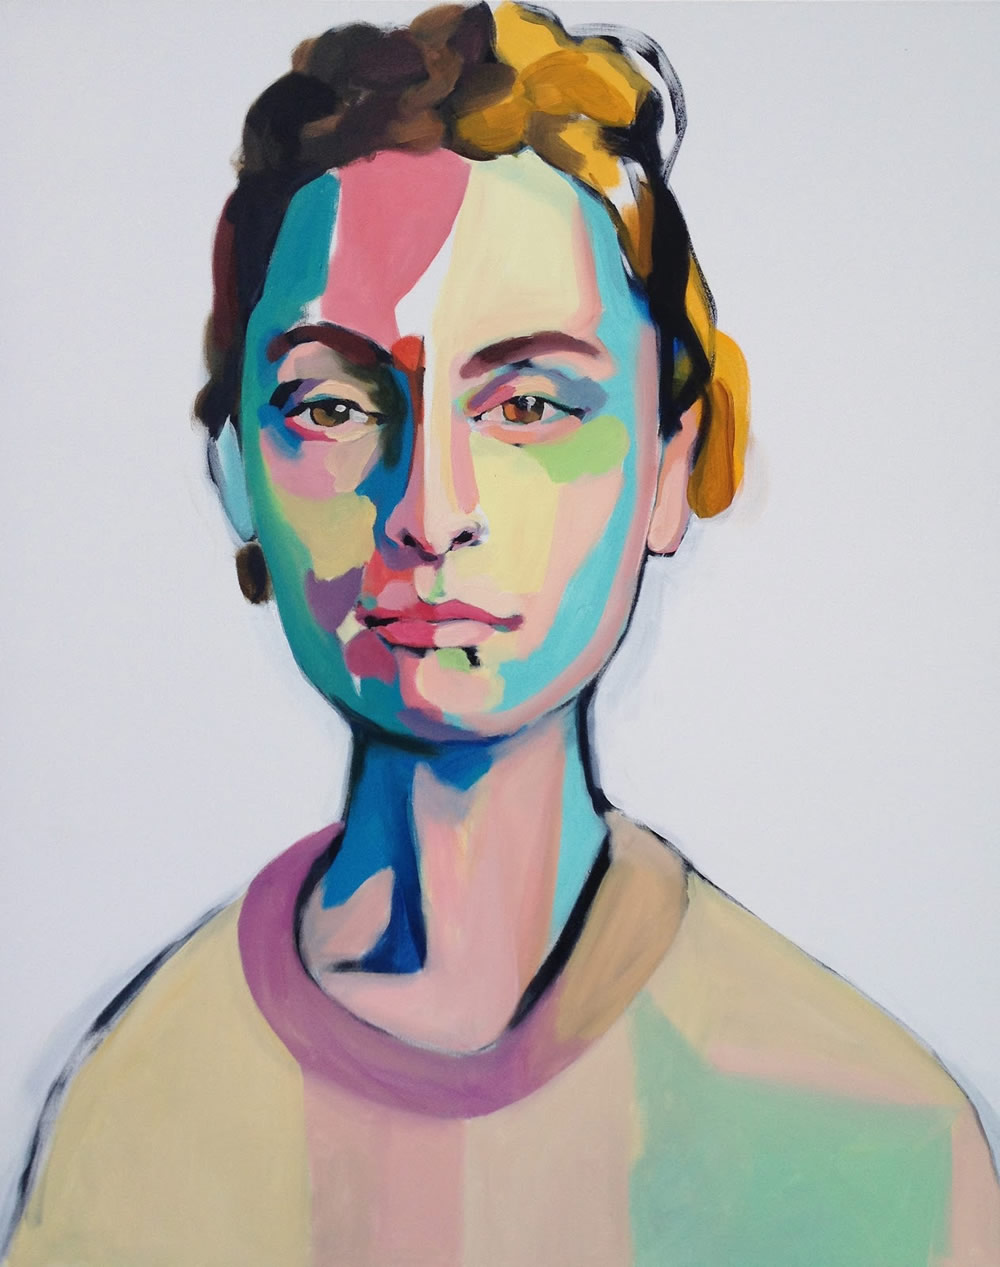 Emma Tingard - Stockholm, Sweden artist